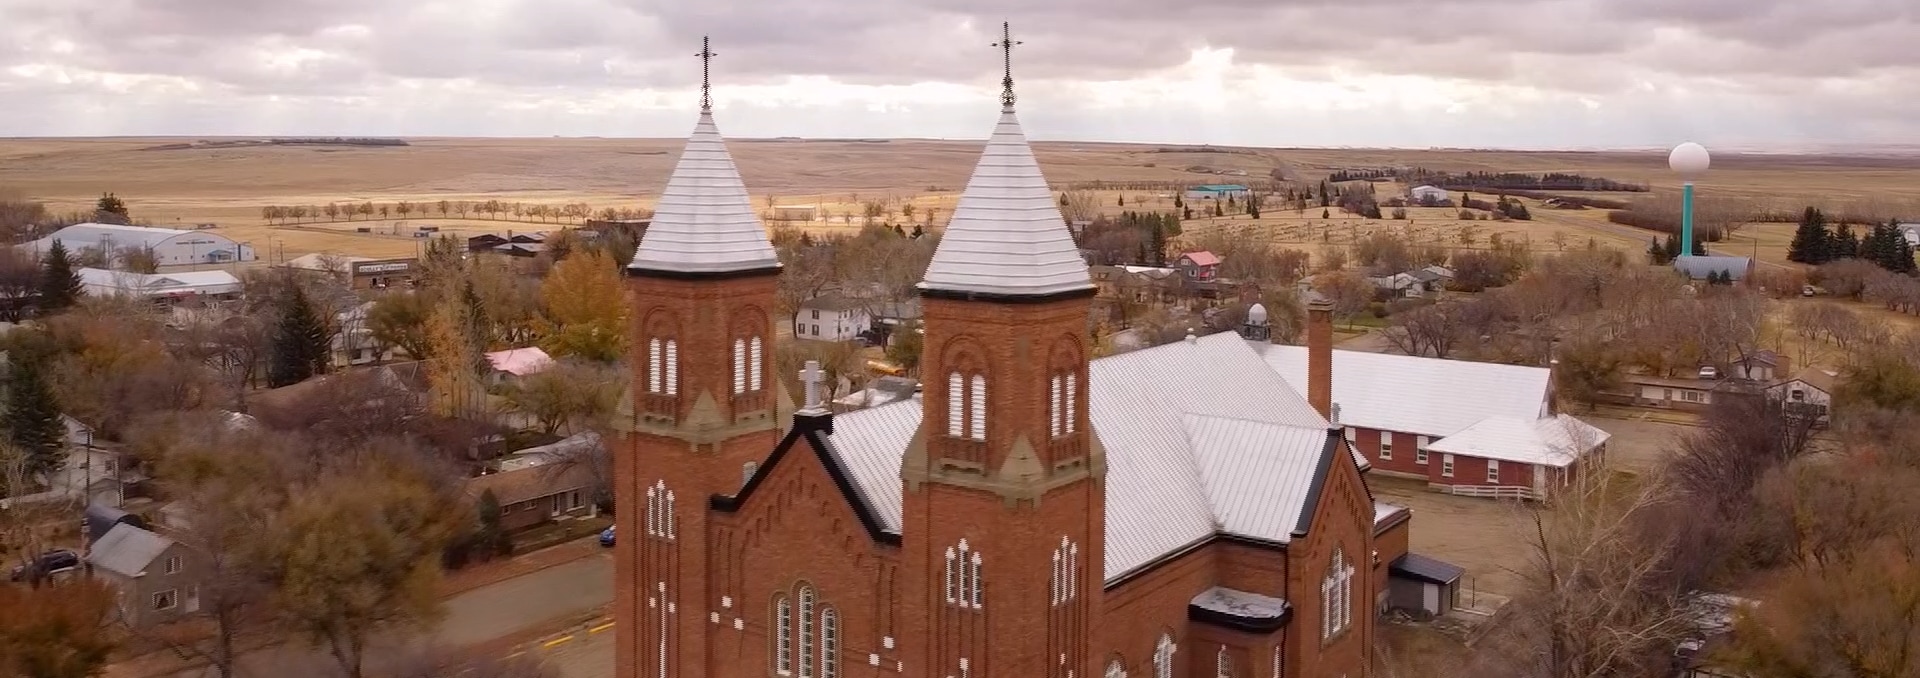 L'Église de Ponteix en Saskatchewan sous un ciel menaçant. On peut voir la tour à eau du village en arrière plan.